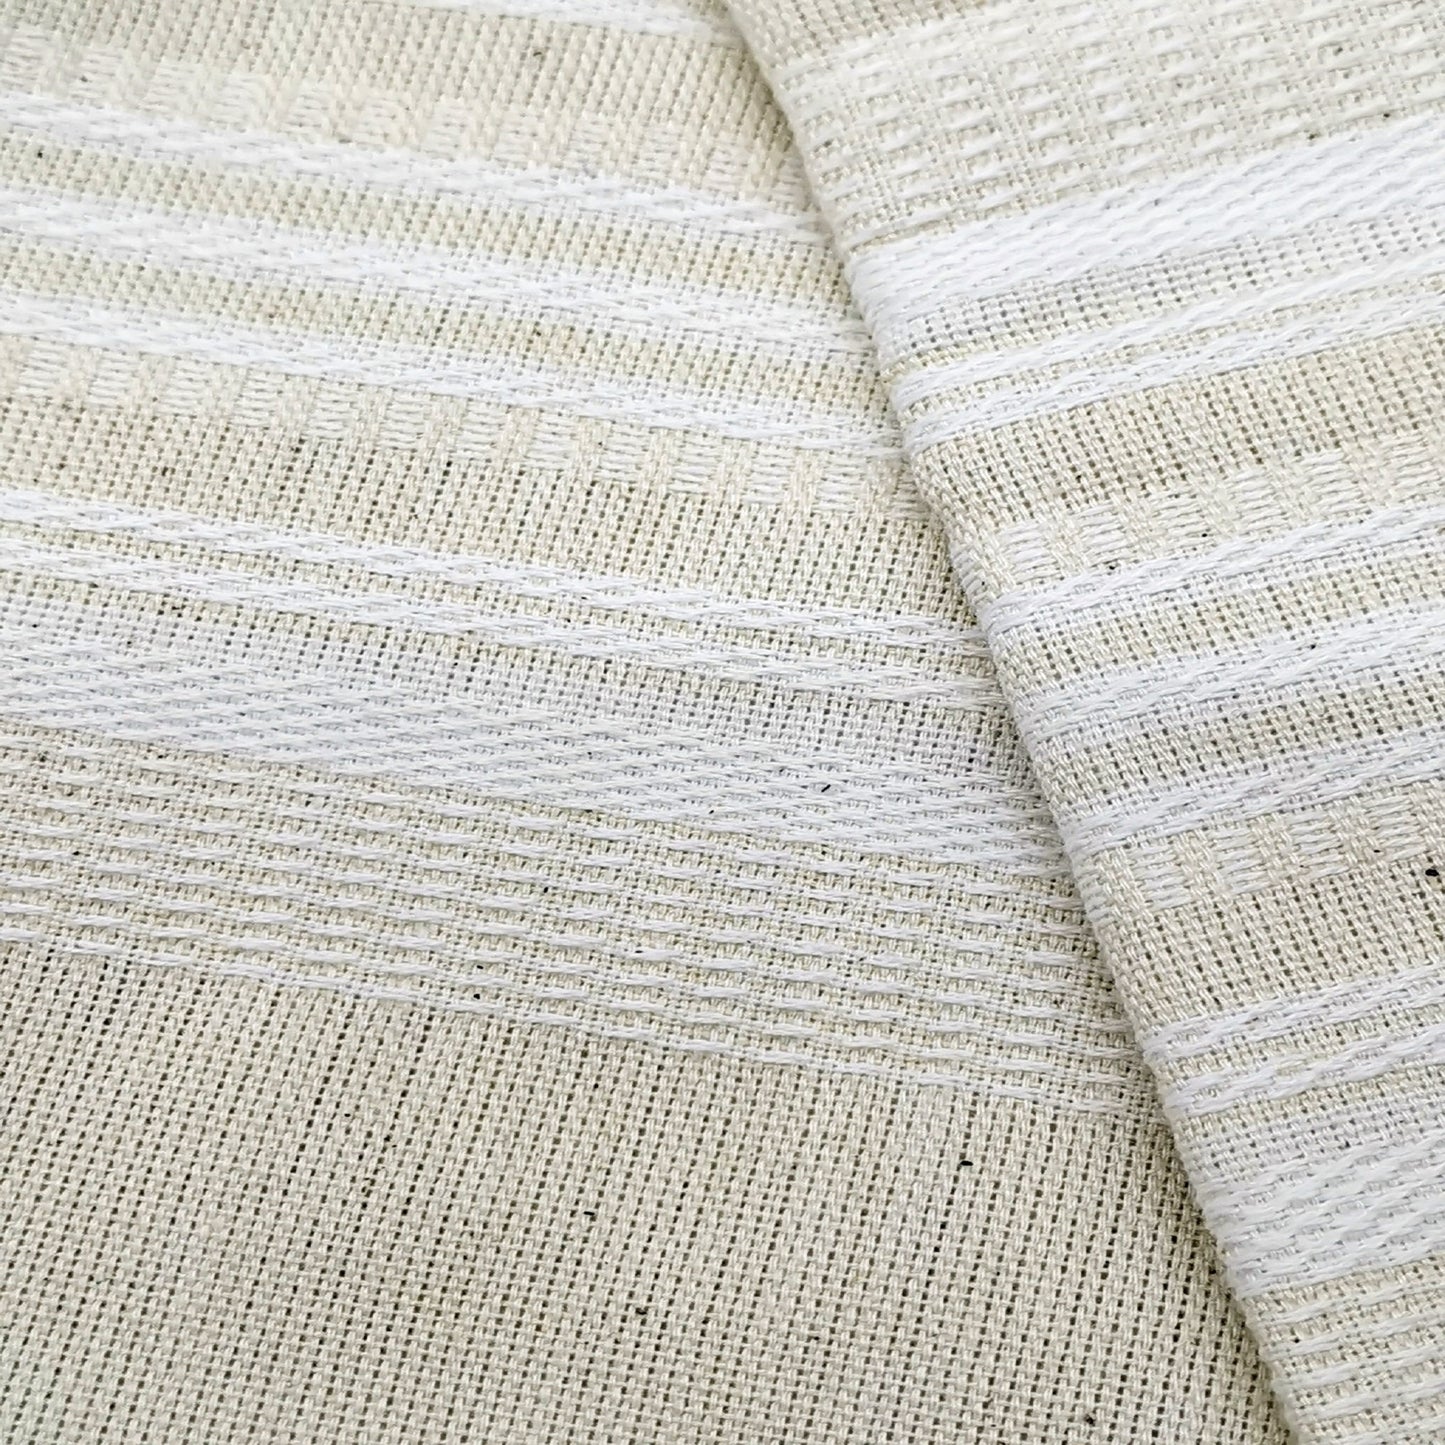 Cotton Napkins White on Ecru -set of 4